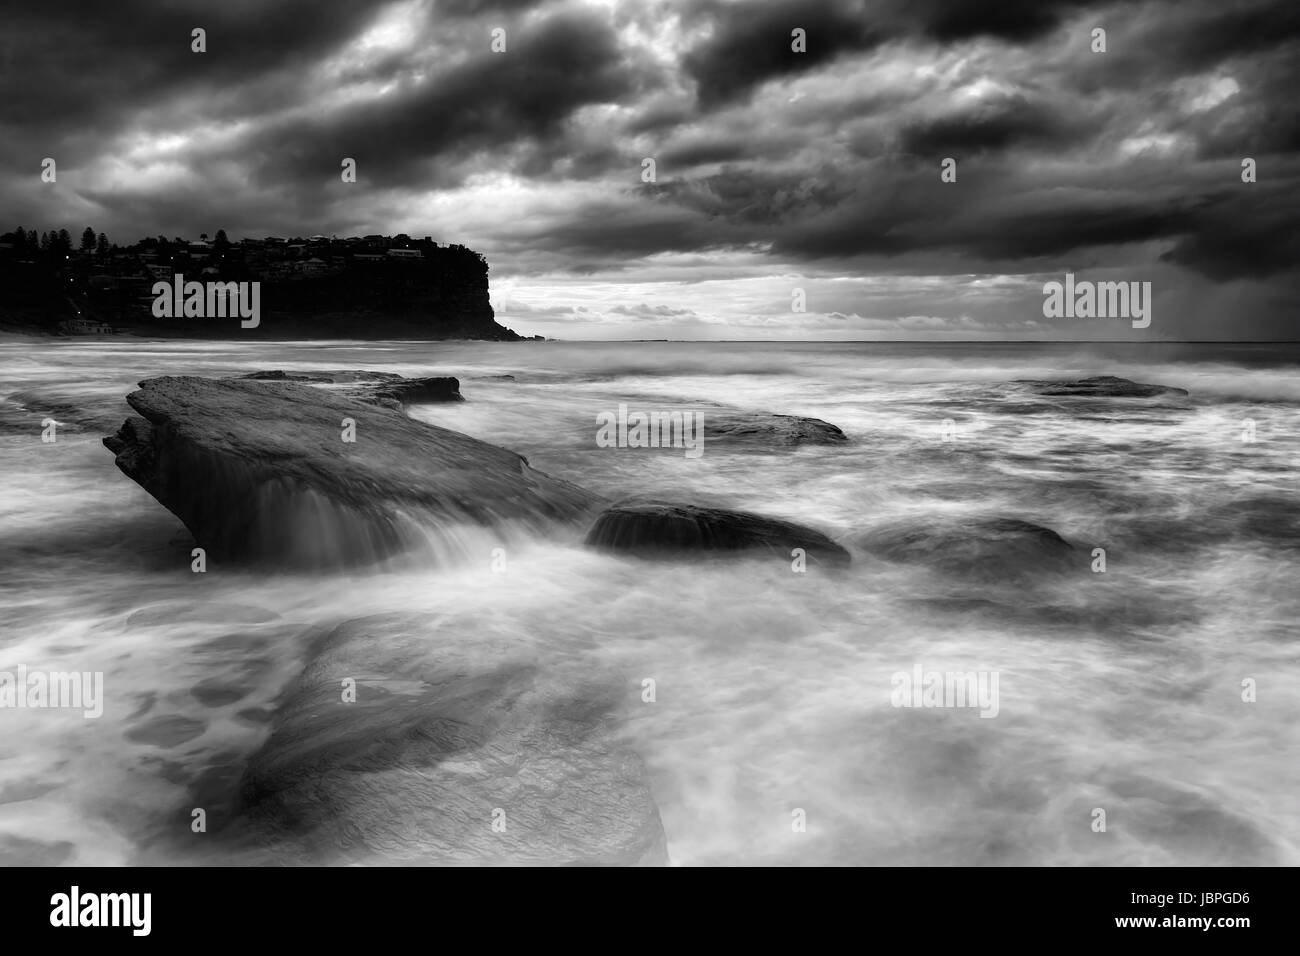 Conditions météorologiques orageuses spectaculaires au large de Sydney Pacific aroudn Bungan beach avec des rochers submergés survolés par des vagues en noir-blanc co Banque D'Images